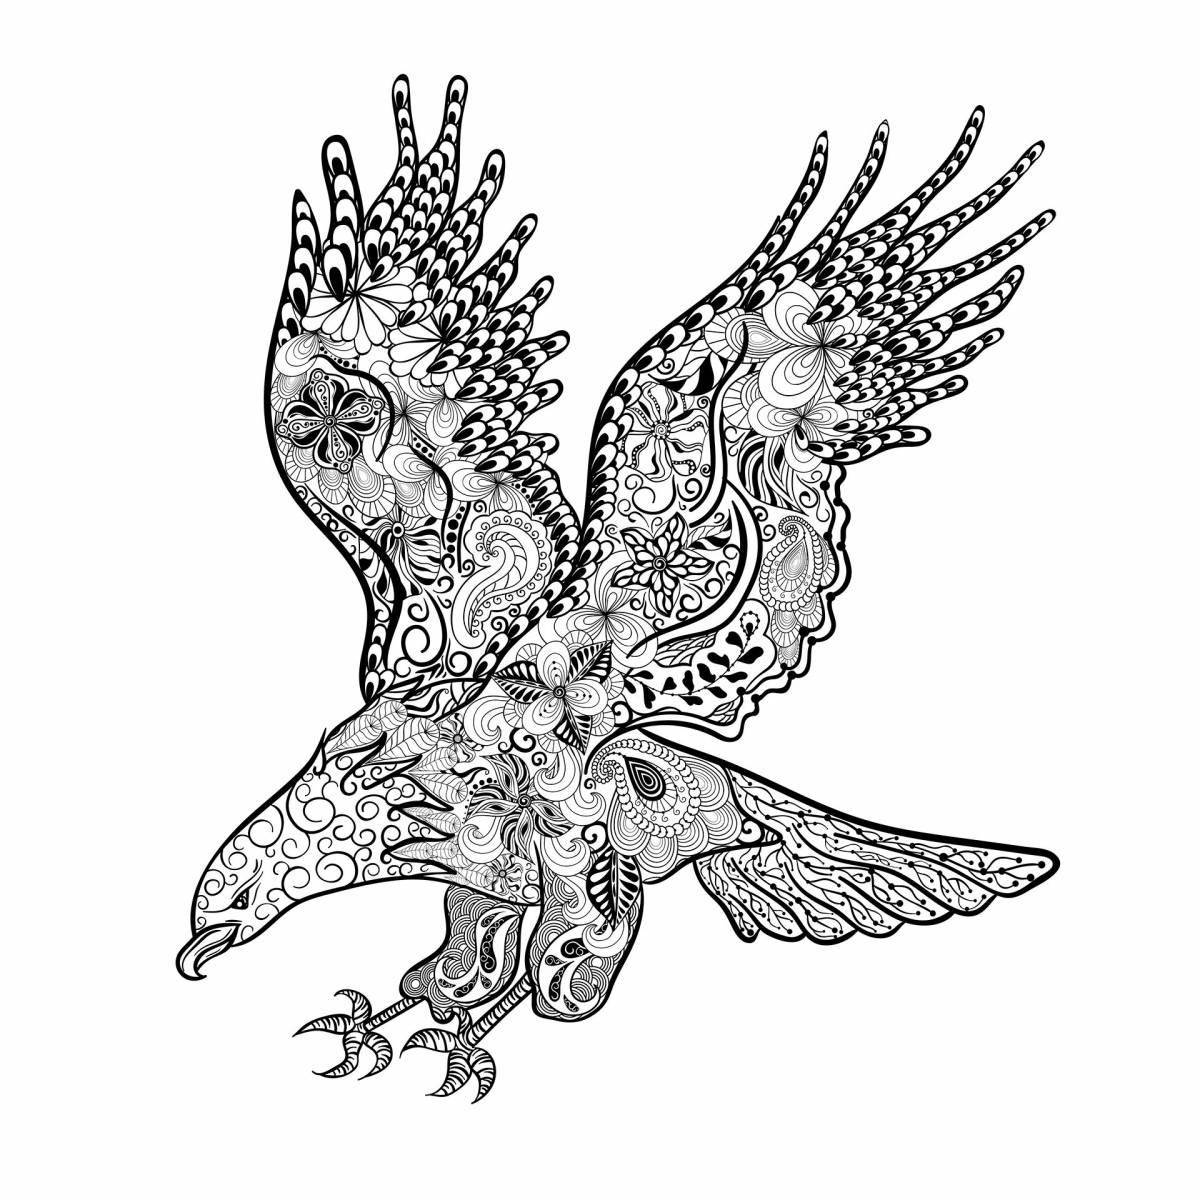 Удивительная раскраска антистрессовый орел